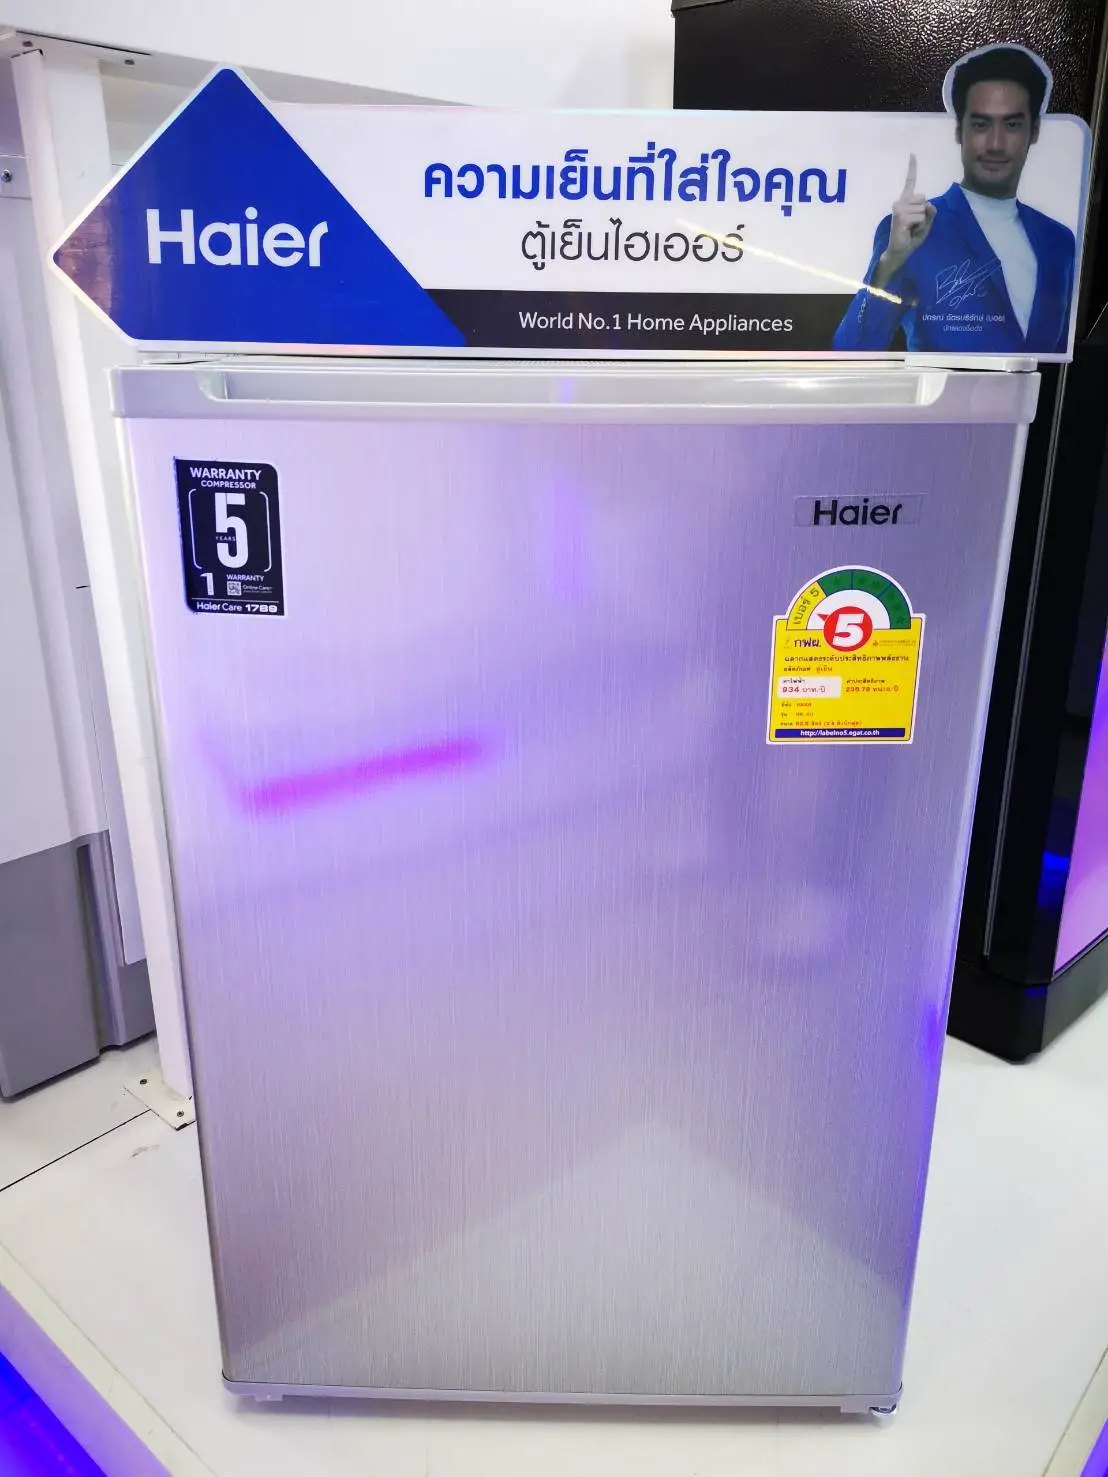 ส่งฟรี Haier ตู้เย็นมินิบาร์ ขนาด 2.9 คิว รุ่น HR-80C มีฉลากประหยัดไฟเบอร์ 5 รับประกันสินค้า 1ปี คอม 5ปี ประตูสลับซ้าย ขวาได้